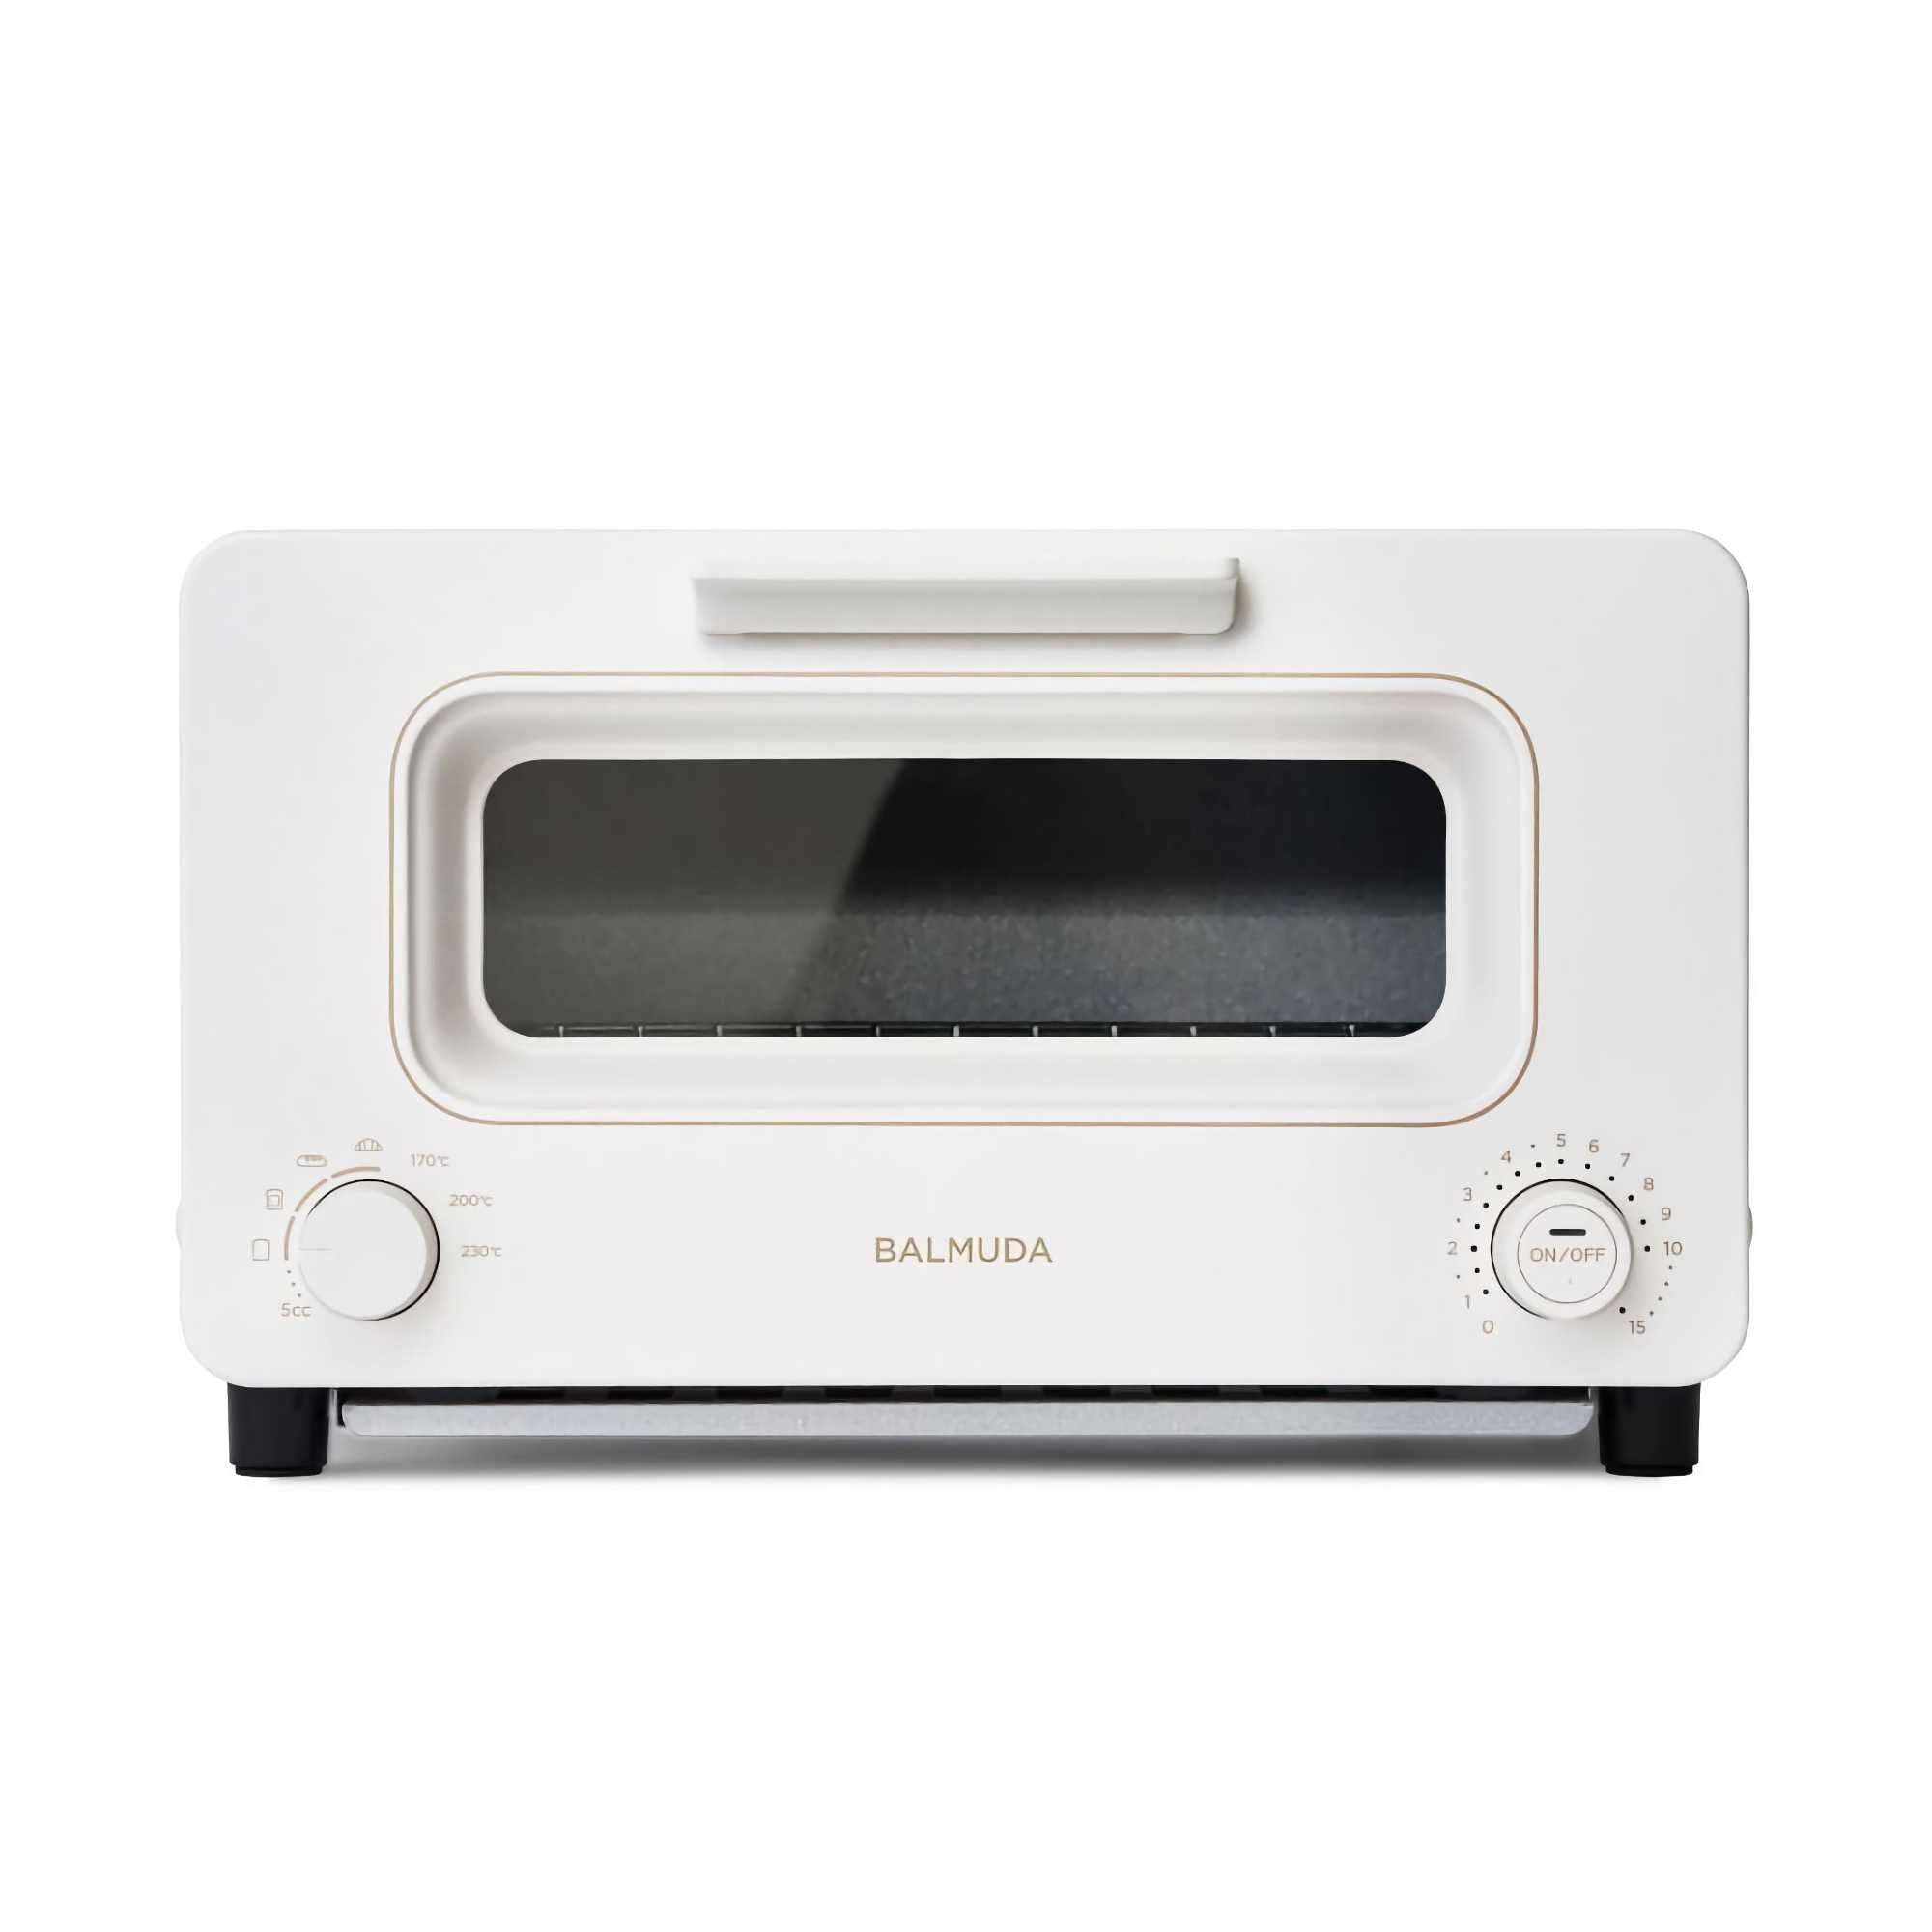 Balmuda The Toaster, white